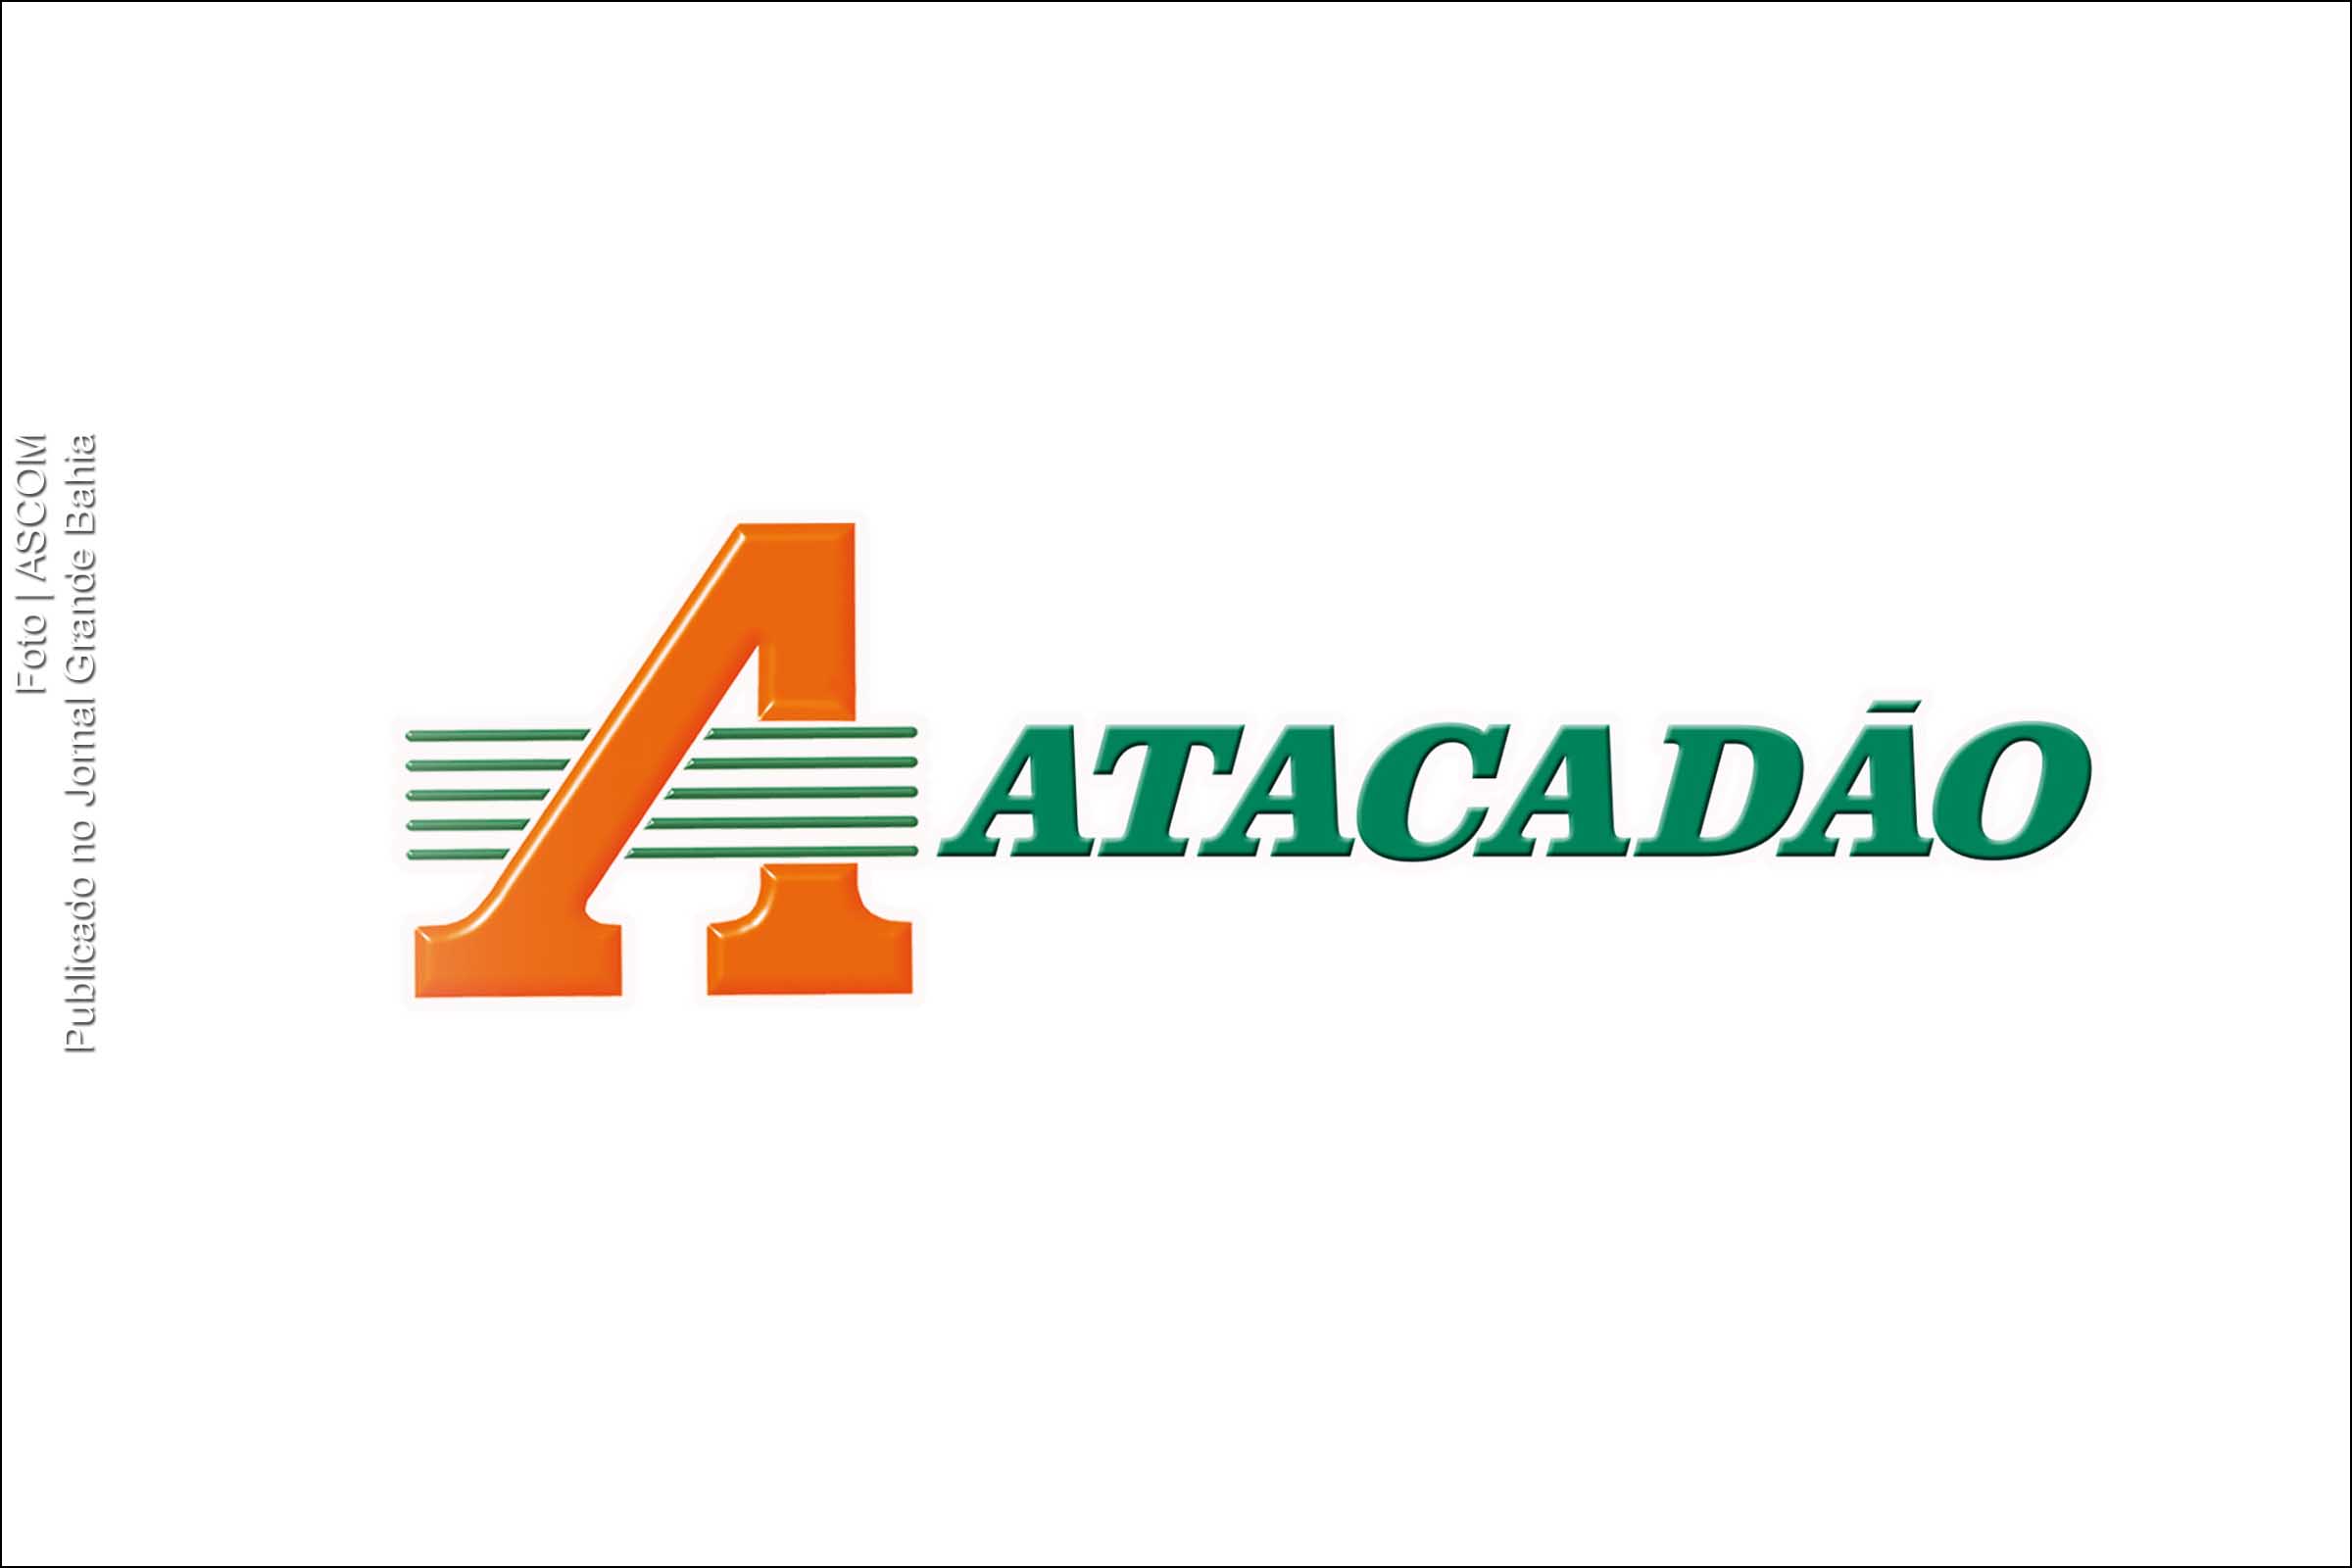 Atacadão é uma rede brasileira de supermercados atacado-varejista, pertencente ao grupo Carrefour